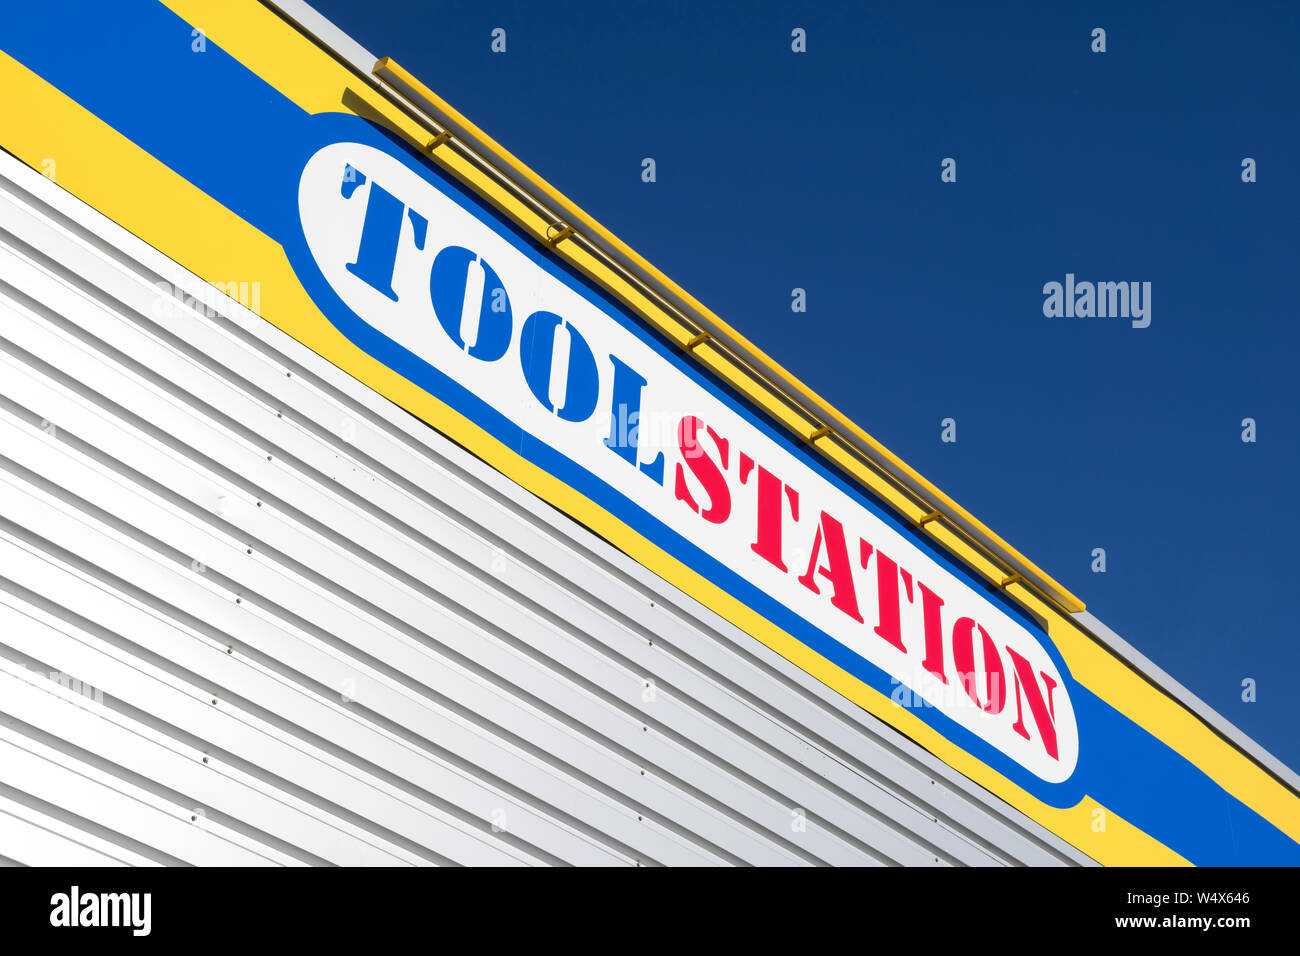 Toolstation Zeichen in Zweigstellen. Toolstation ist ein Lieferant von Werkzeugen, Zubehör und Produkte für Profis und Heimwerker. Stockfoto